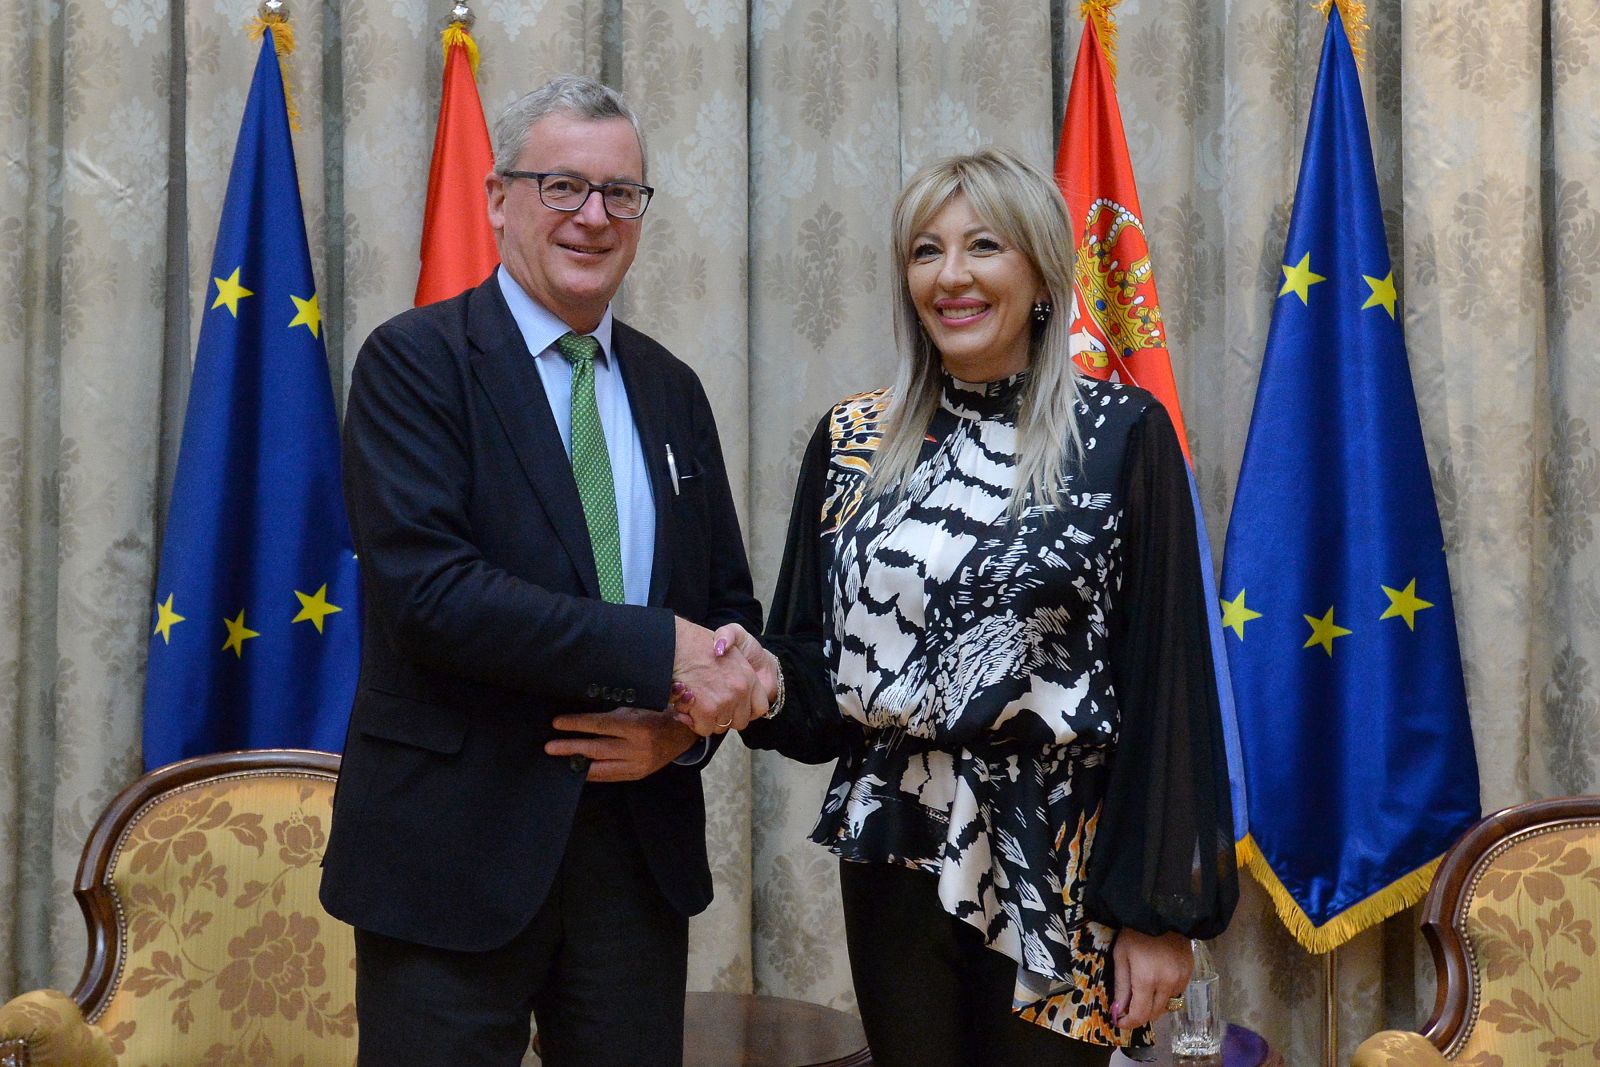 J. Joksimović 和 Eigner：塞爾維亞在加入歐盟的所有領域都取得了進展